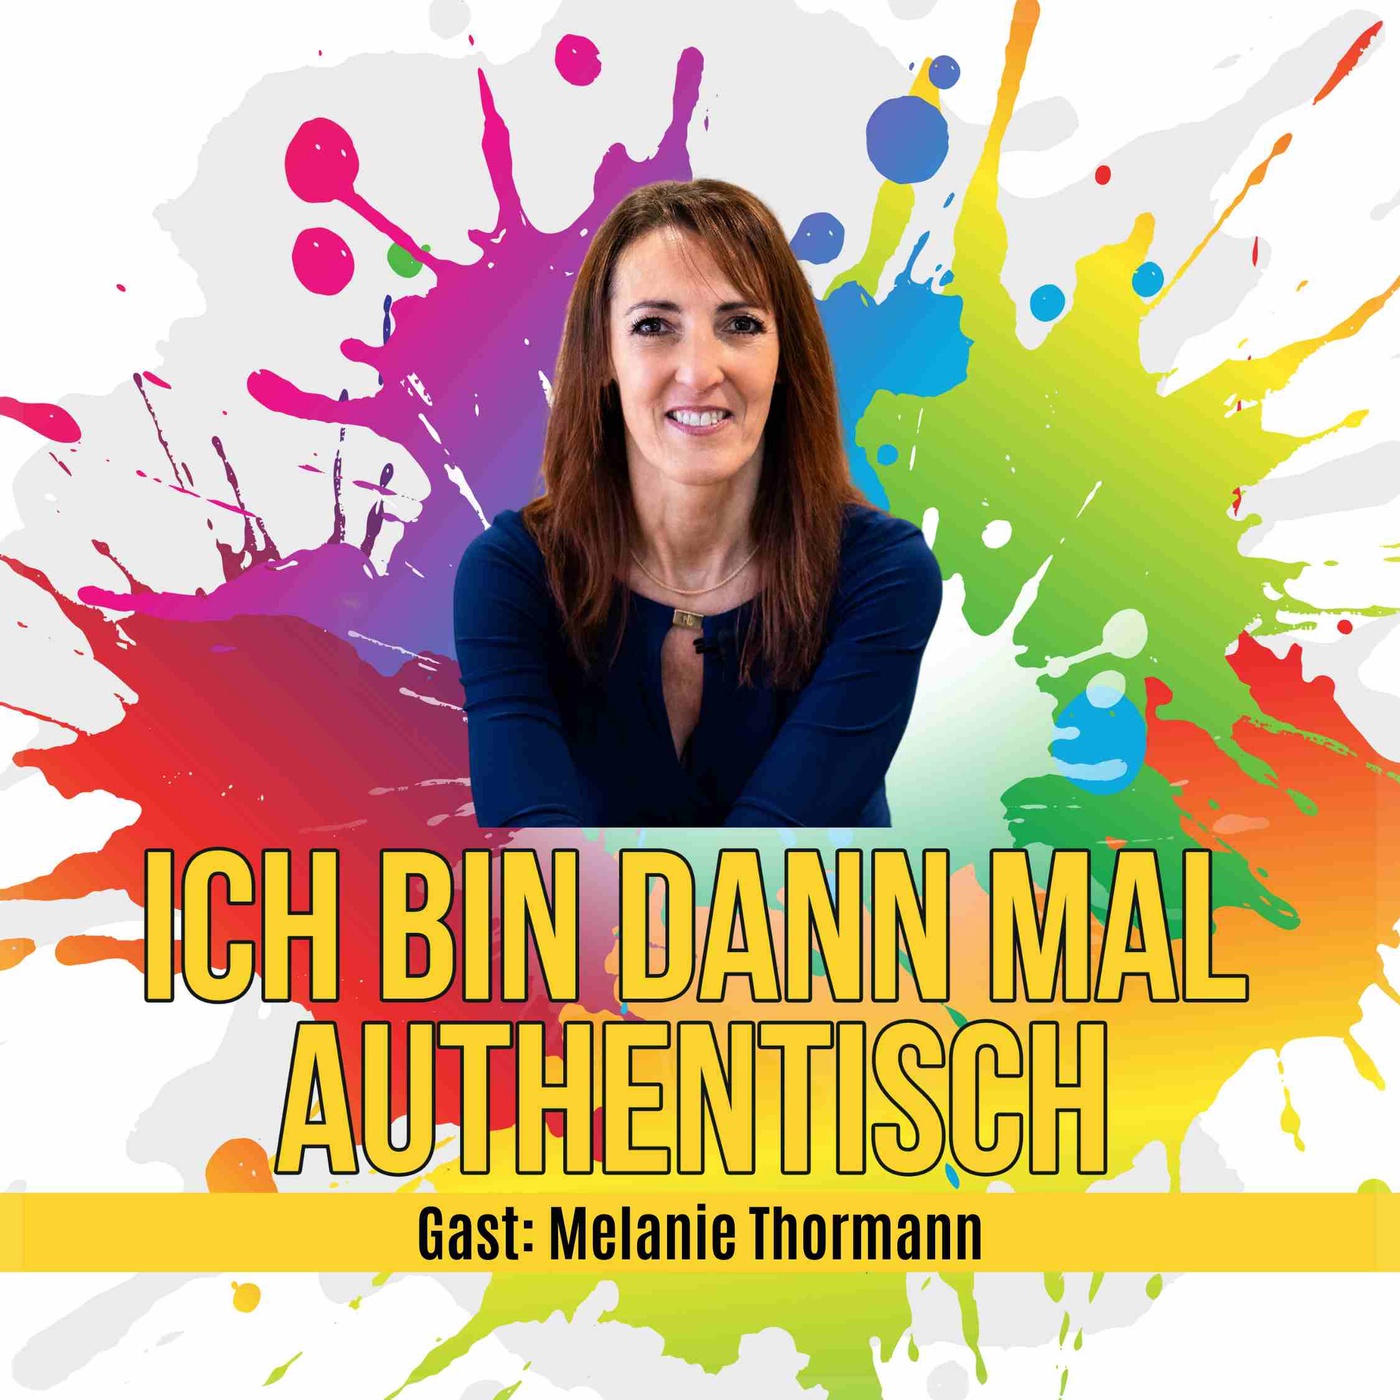 Melanie Thormann: Selbstermächtigung kommt vor Führung